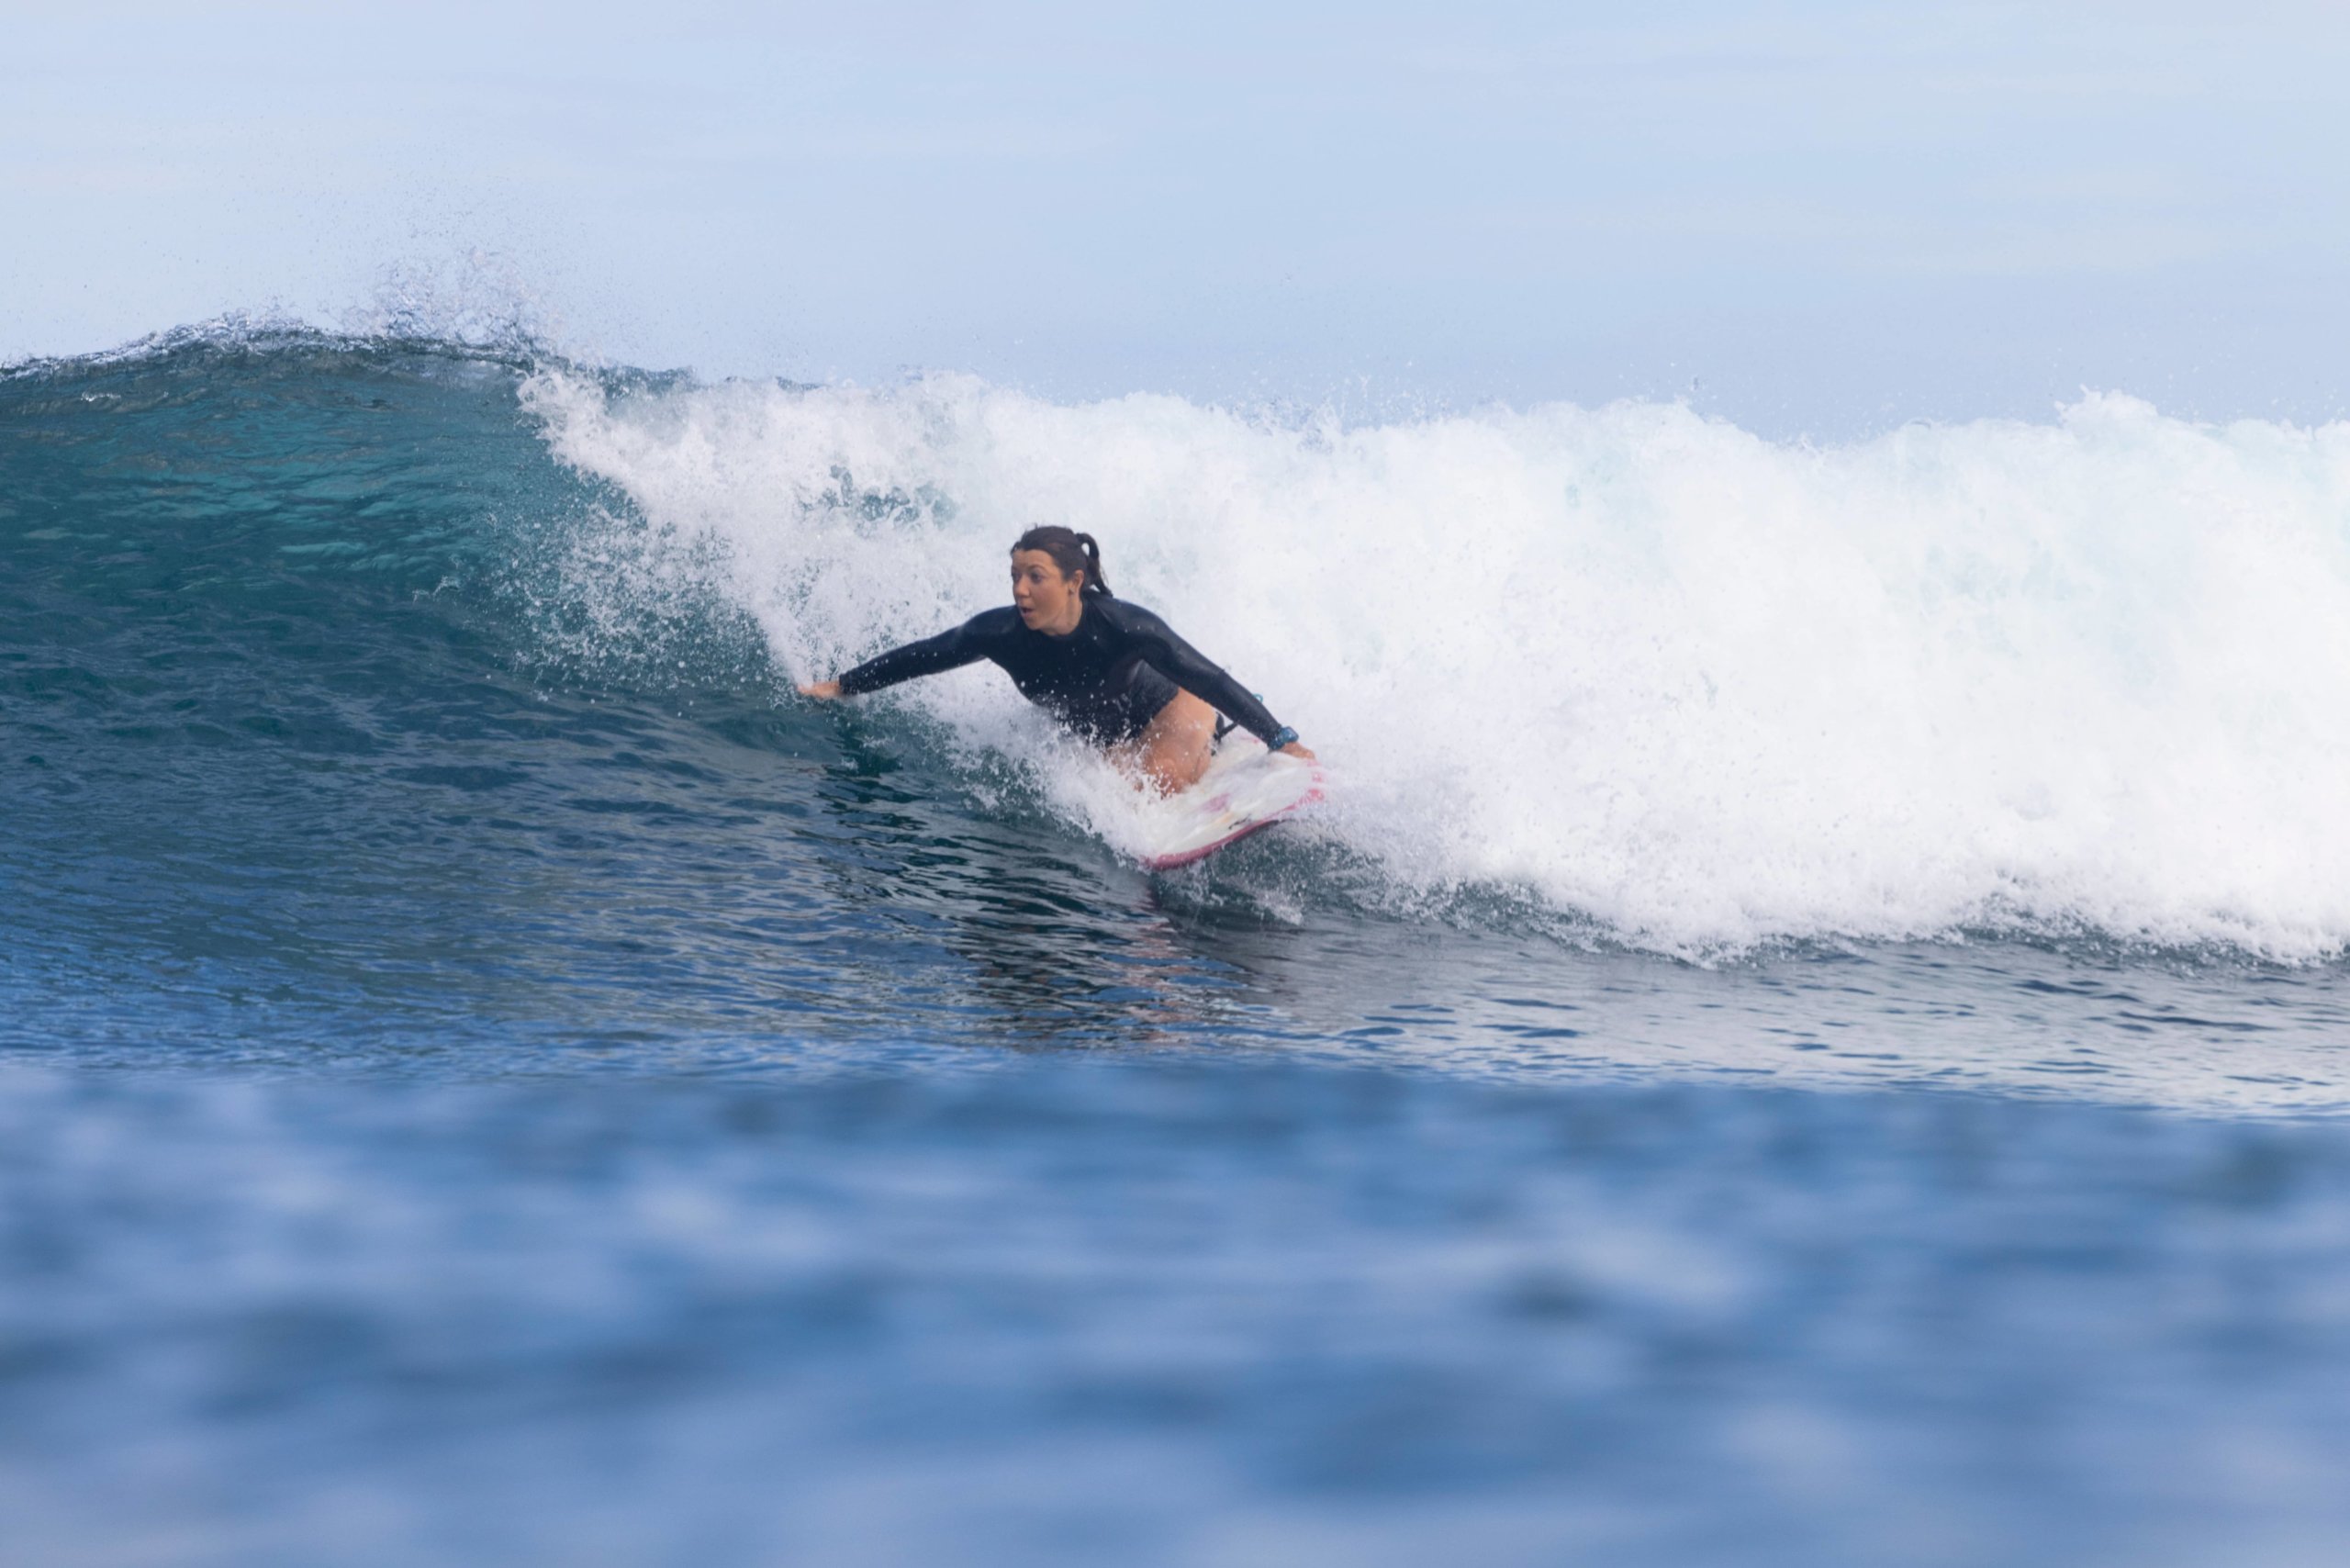 Victoria Feige kneel surfing